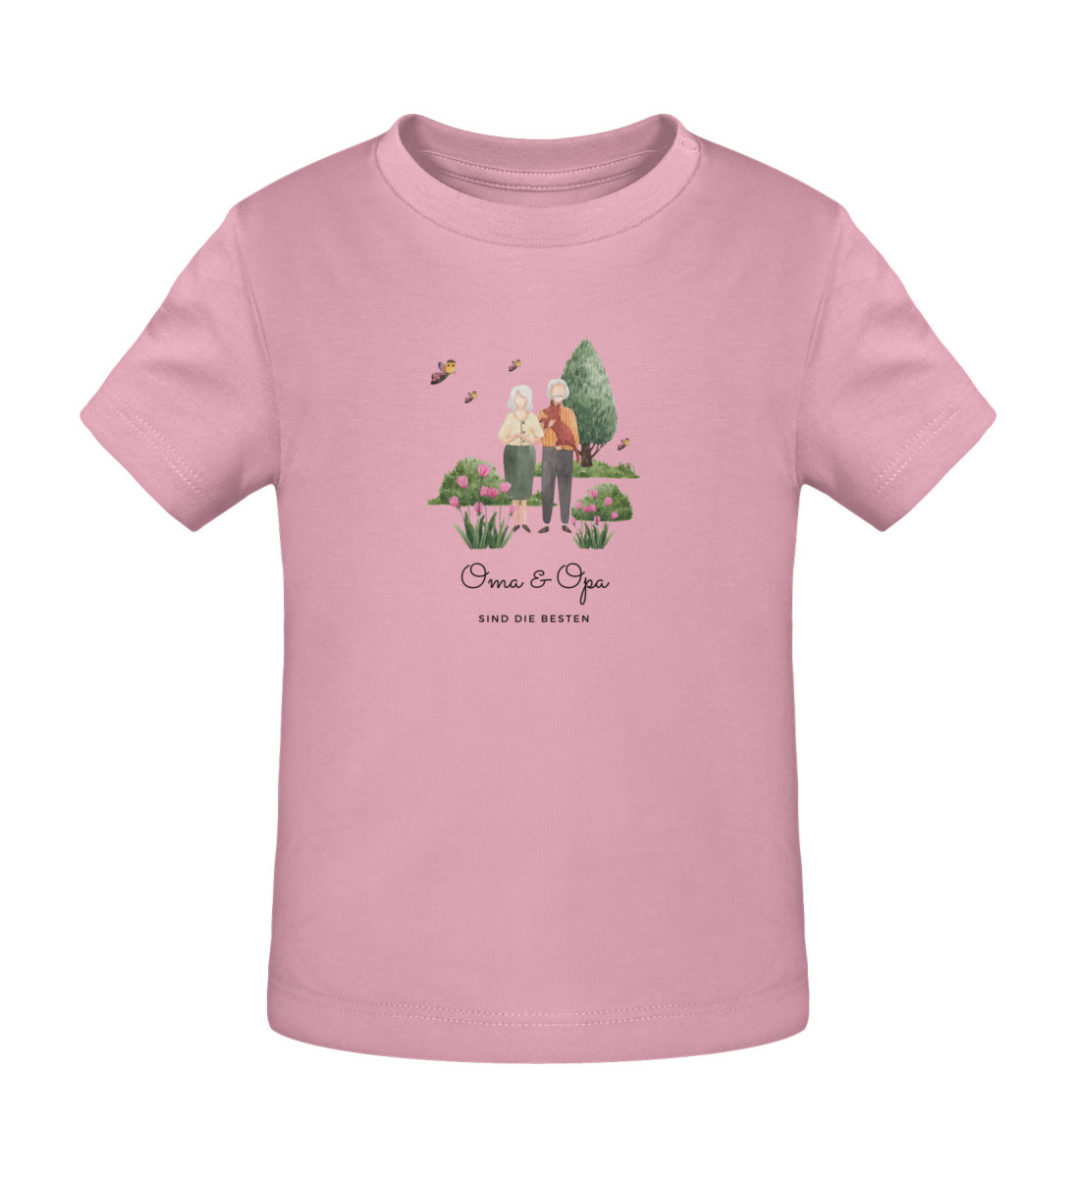 Oma & Opa sind die besten - Baby Creator T-Shirt ST/ST-6883